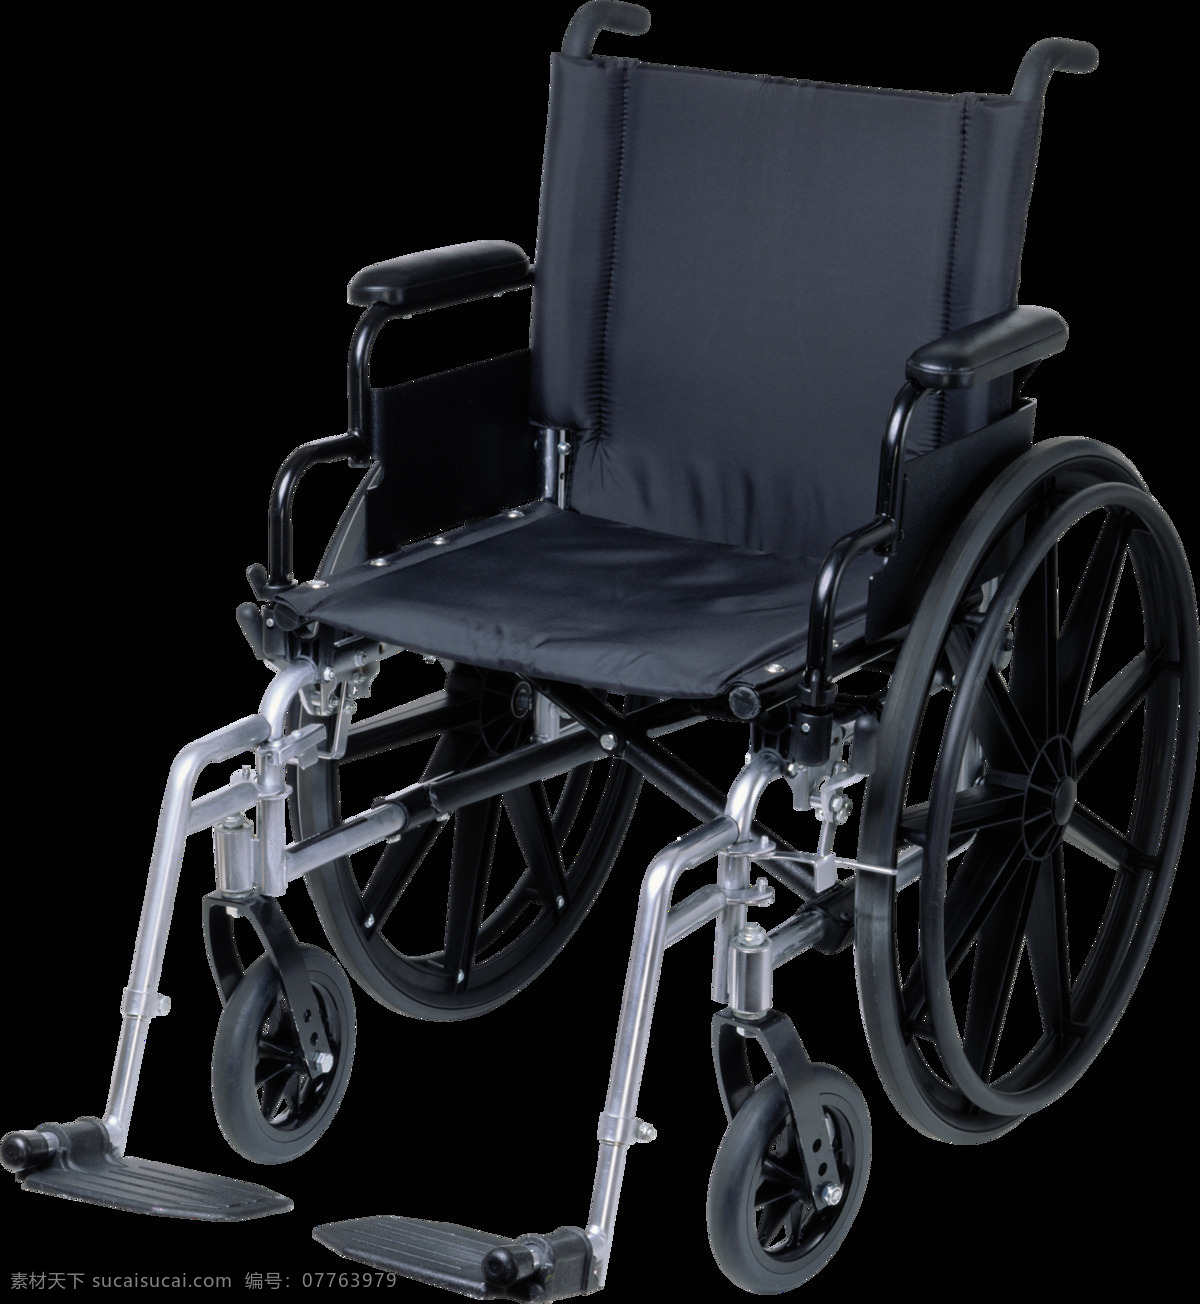 手摇 轮椅 免 抠 透明 图 层 木轮椅 越野轮椅 小轮轮椅 手摇轮椅 轮椅轮子 车载轮椅 老年轮椅 竞速轮椅 轮椅设计 残疾轮椅 折叠轮椅 智能轮椅 医院轮椅 轮椅图片